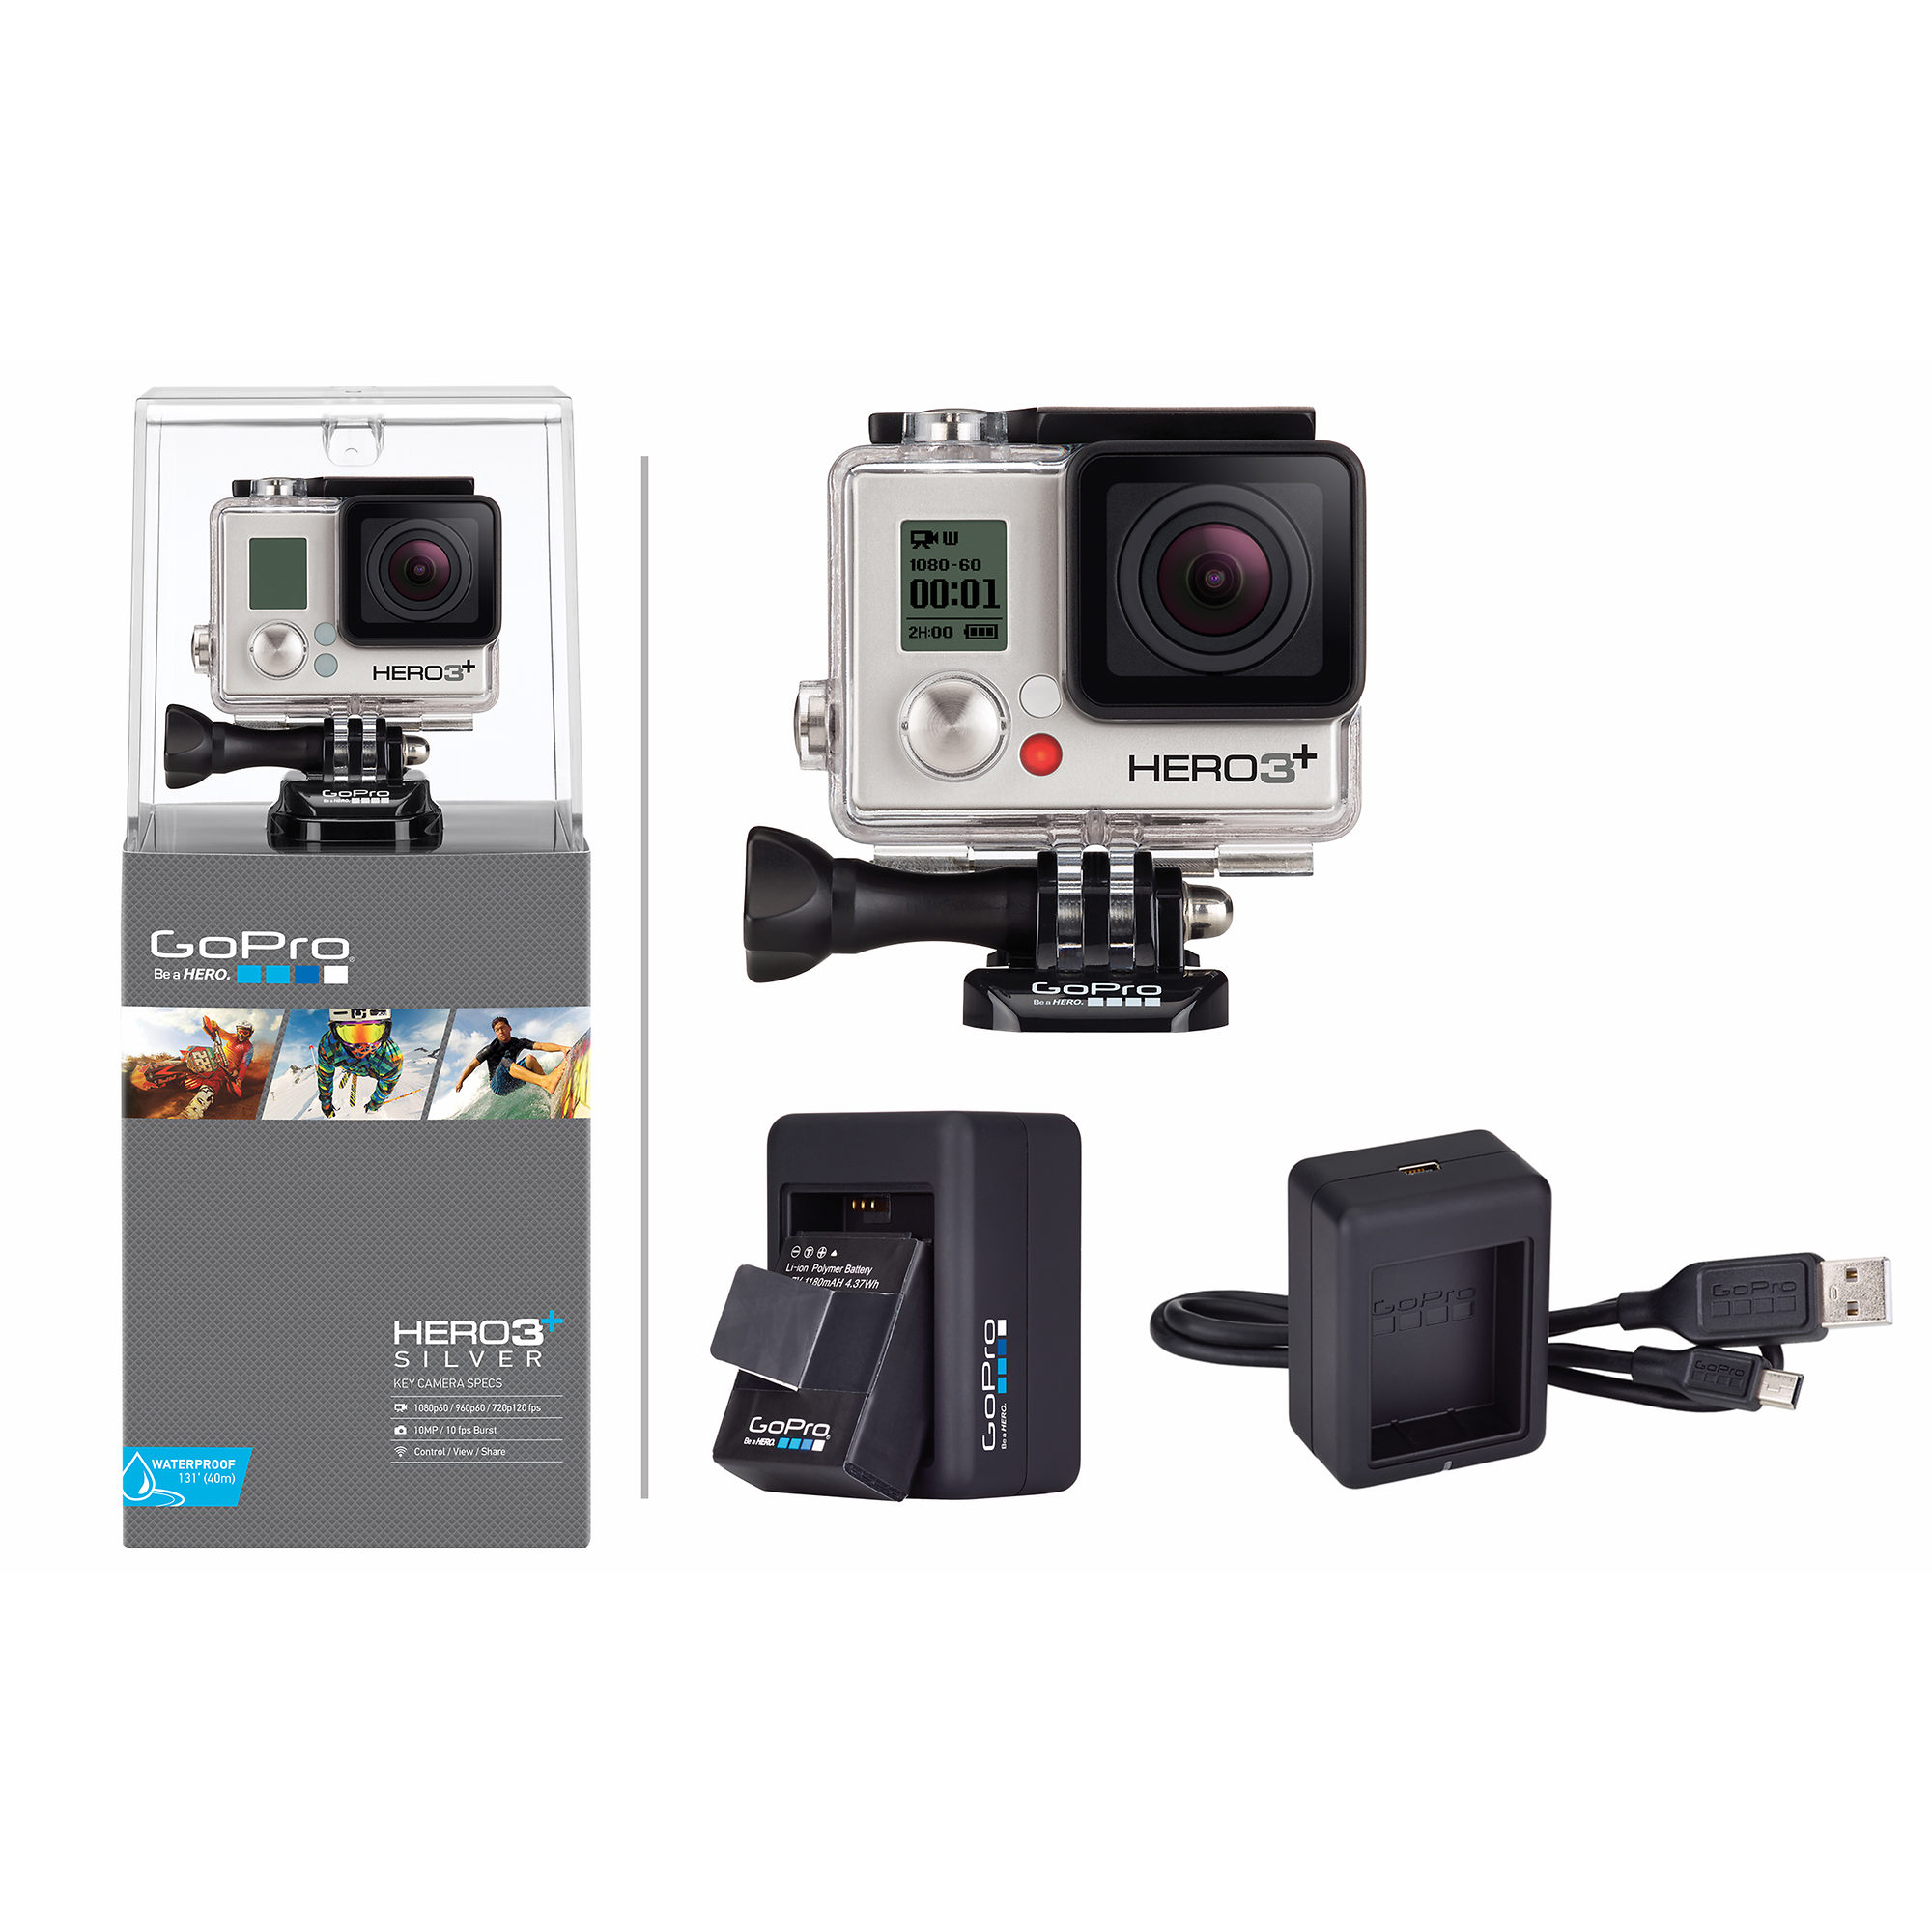 GoPro Hero3+ 银色版运动摄像机 + 额外电池充电器套装 $242.95